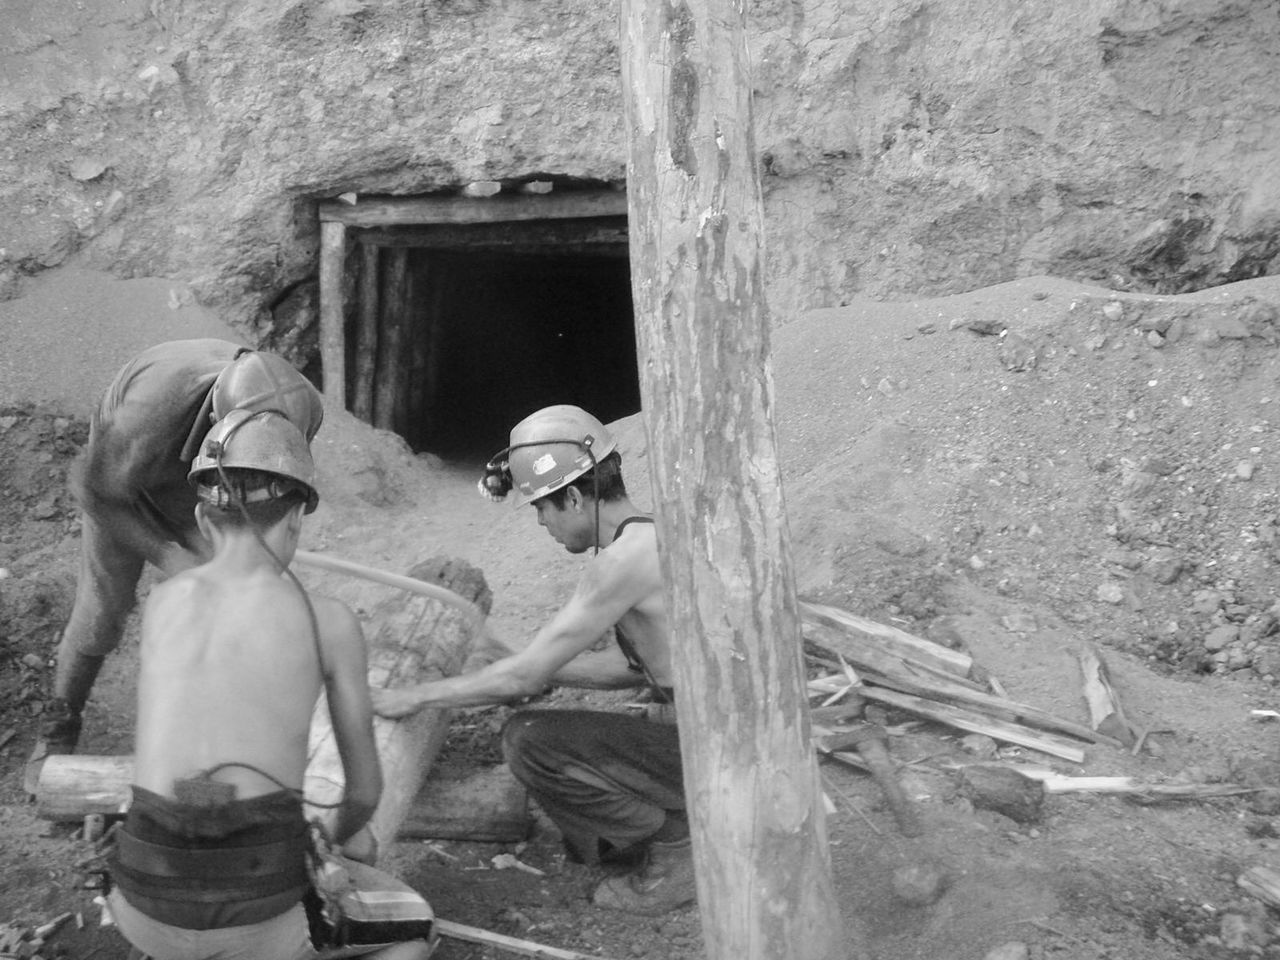 Un minero de 48 años perdió la vida al registrarse un derrumbe en la mina donde trabajaba.